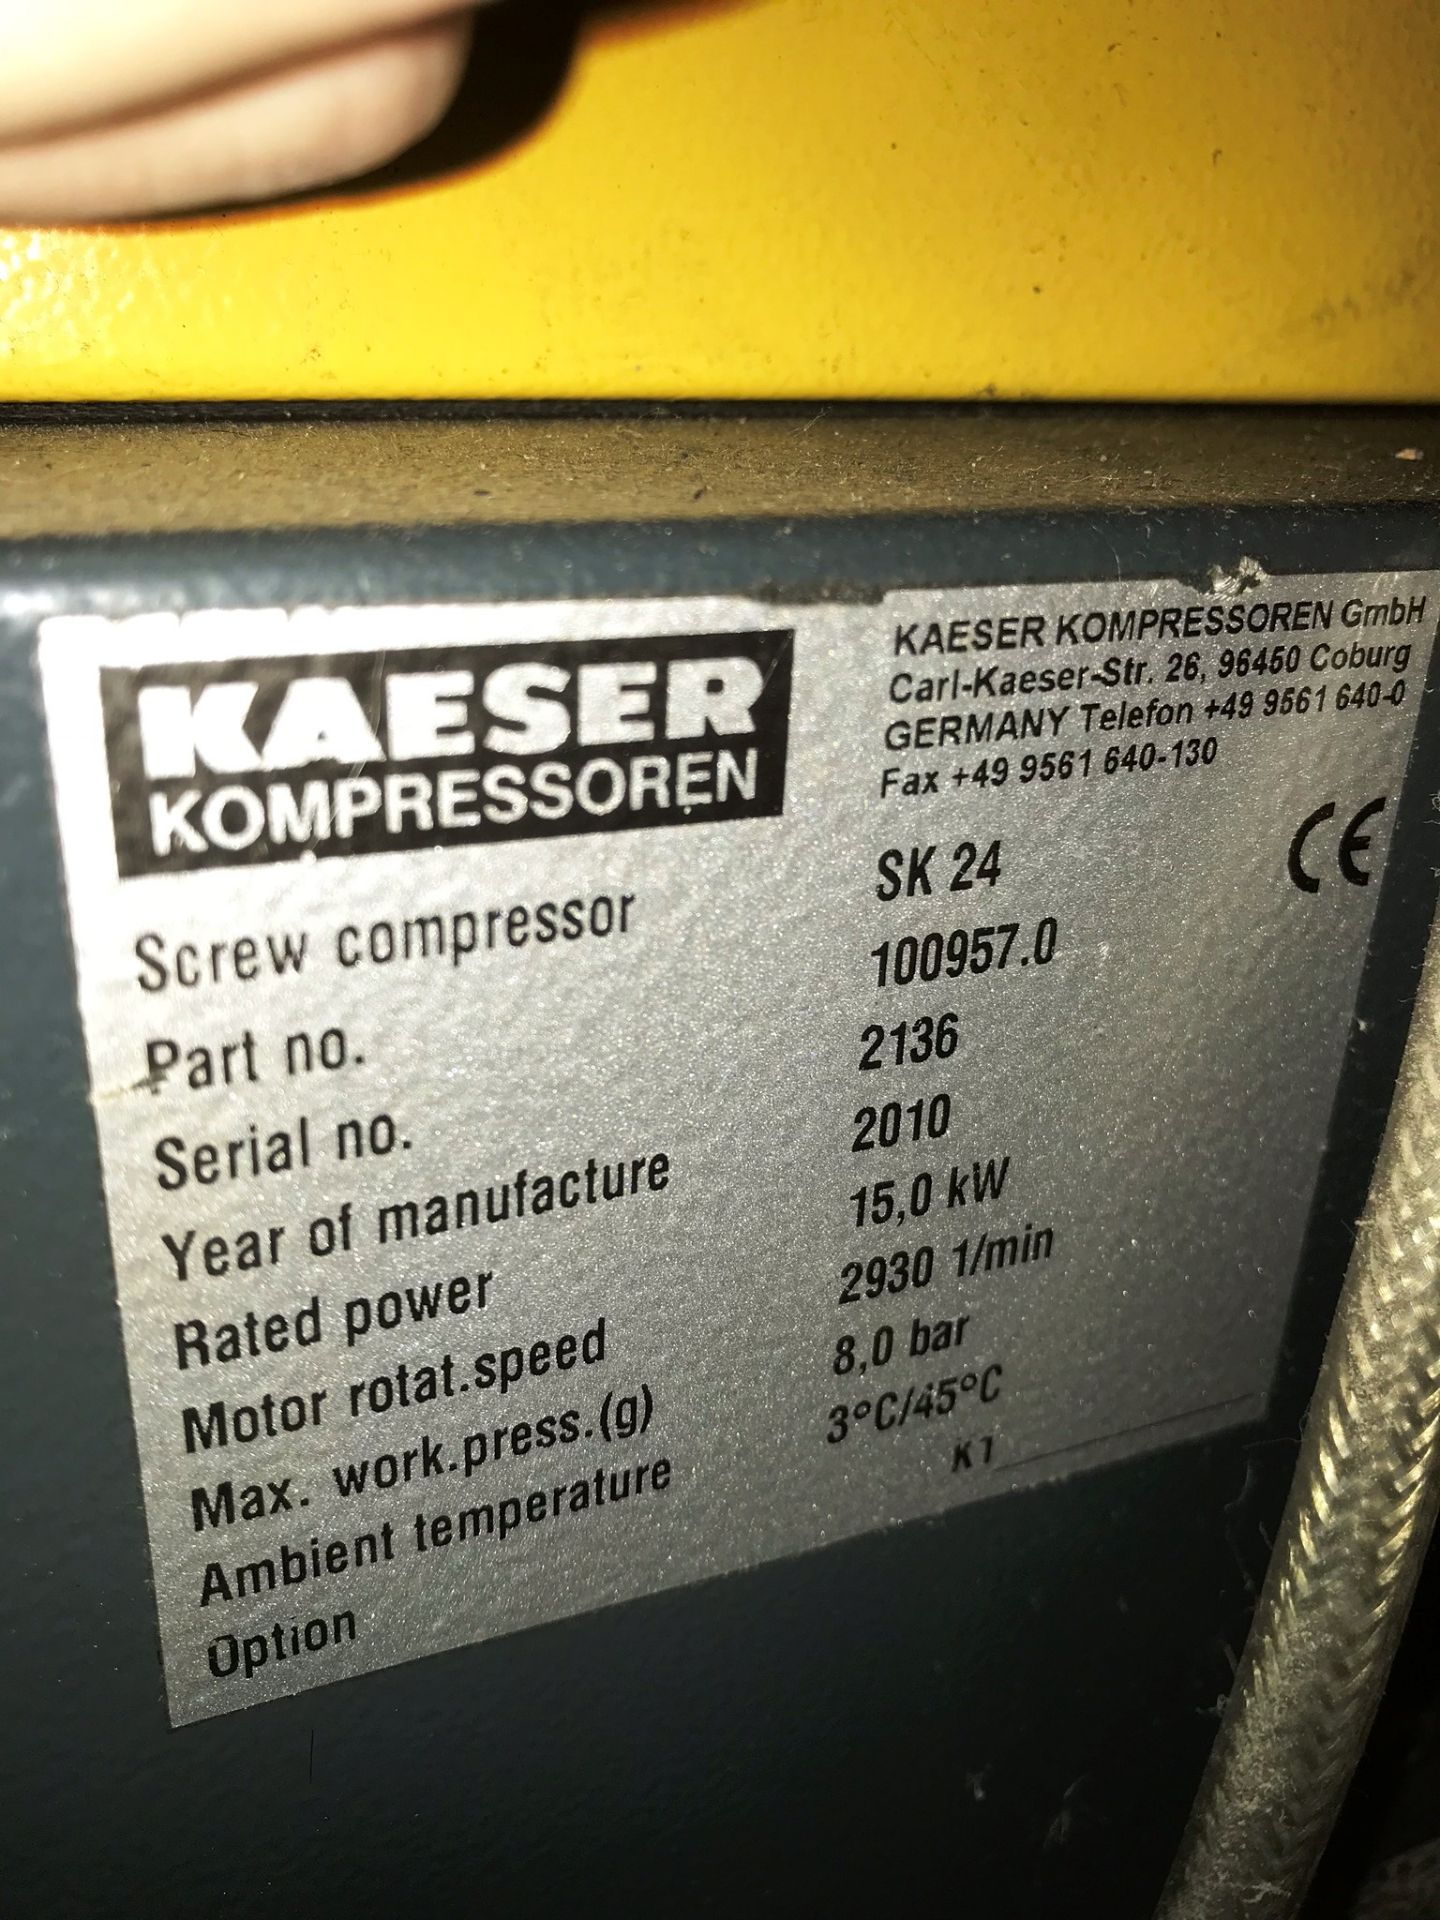 Kaeser SK24 Screw Compressor w/ Kaeser TB 19 Air Dryer, Tank & Filters - Image 4 of 12